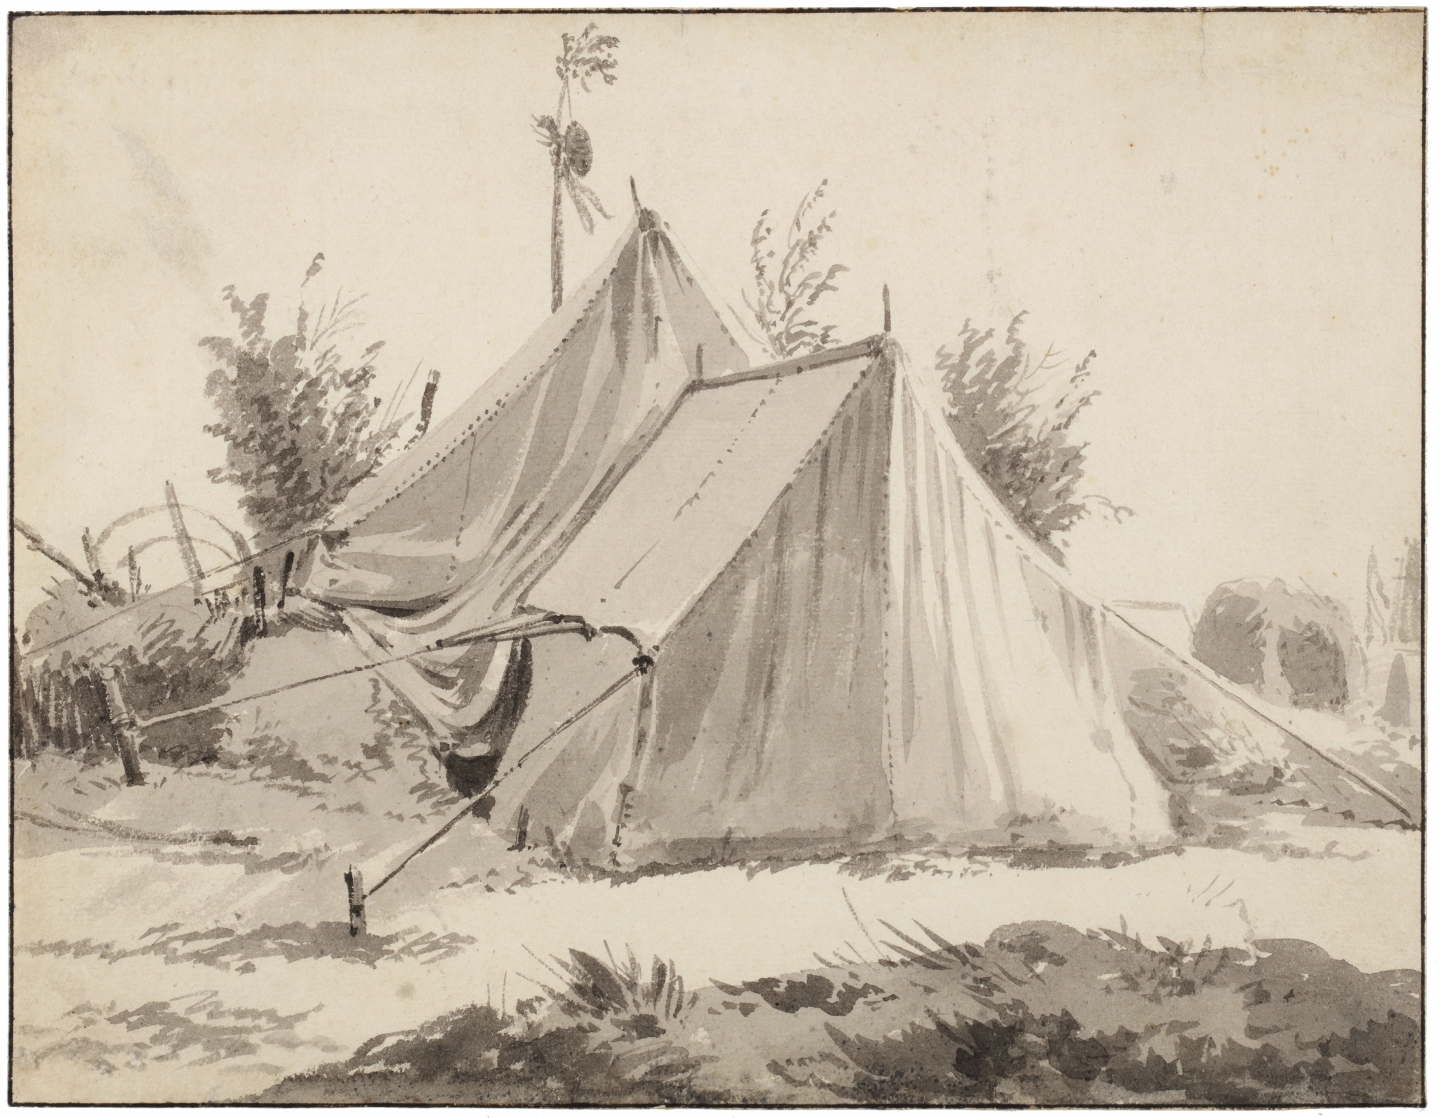 Pieter van Bloemen (Antwerp 1657-1720 Antwerp) Study for a military encampment